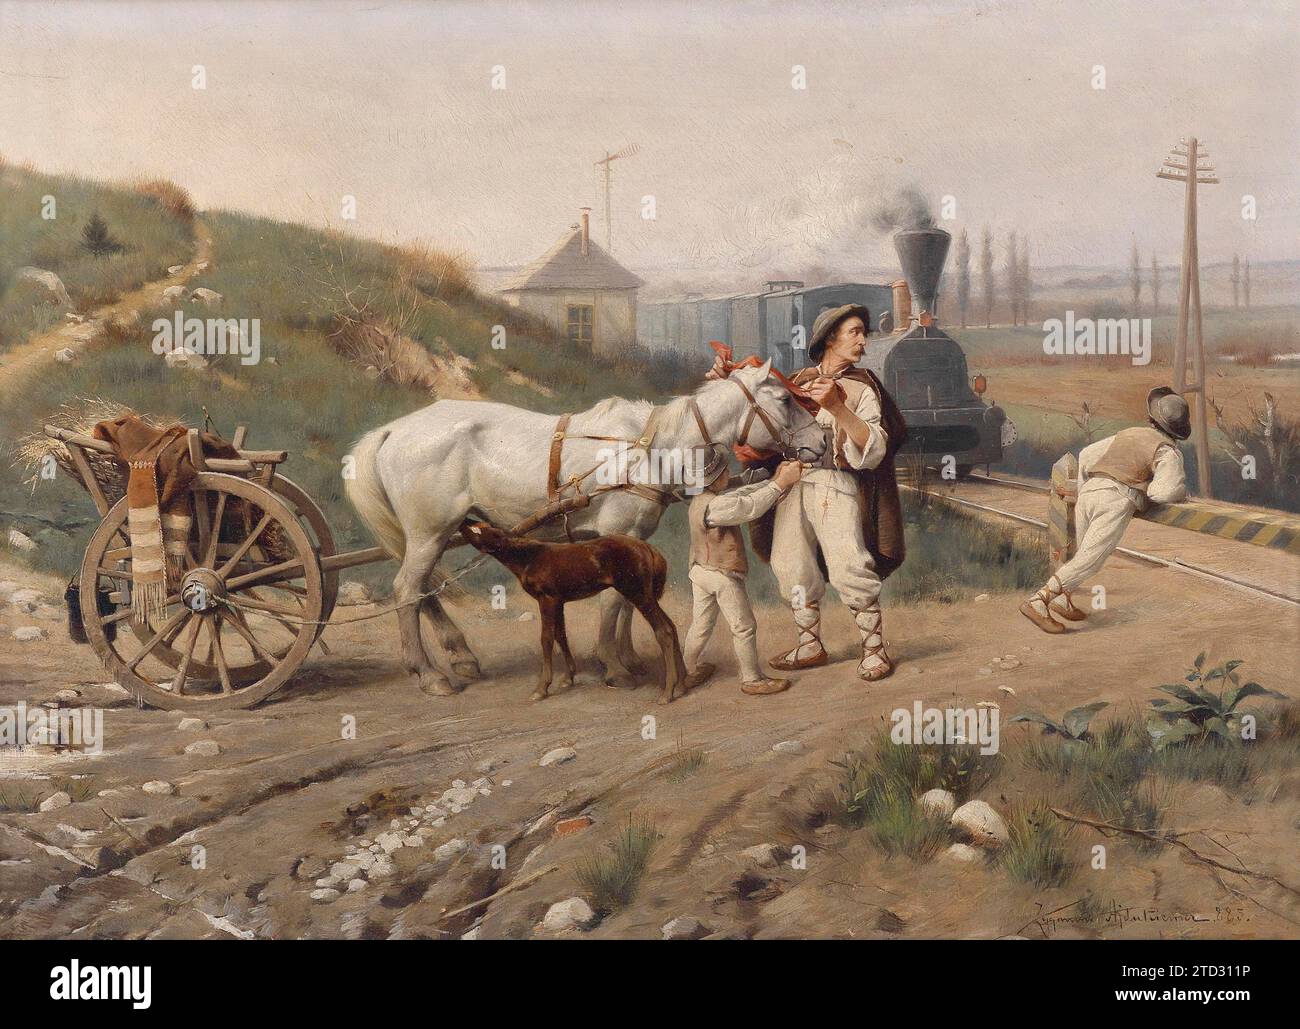 Tableau intitulé 'Un train arrive', de Zygmunt Ajdukiewicz (1861-1917) peintre réaliste polonais de la fin du 19e siècle spécialisé dans les portraits, le genre et la peinture historique. Ajdukiewicz, est né et a grandi dans le secteur autrichien de la Pologne partitionnée. Banque D'Images